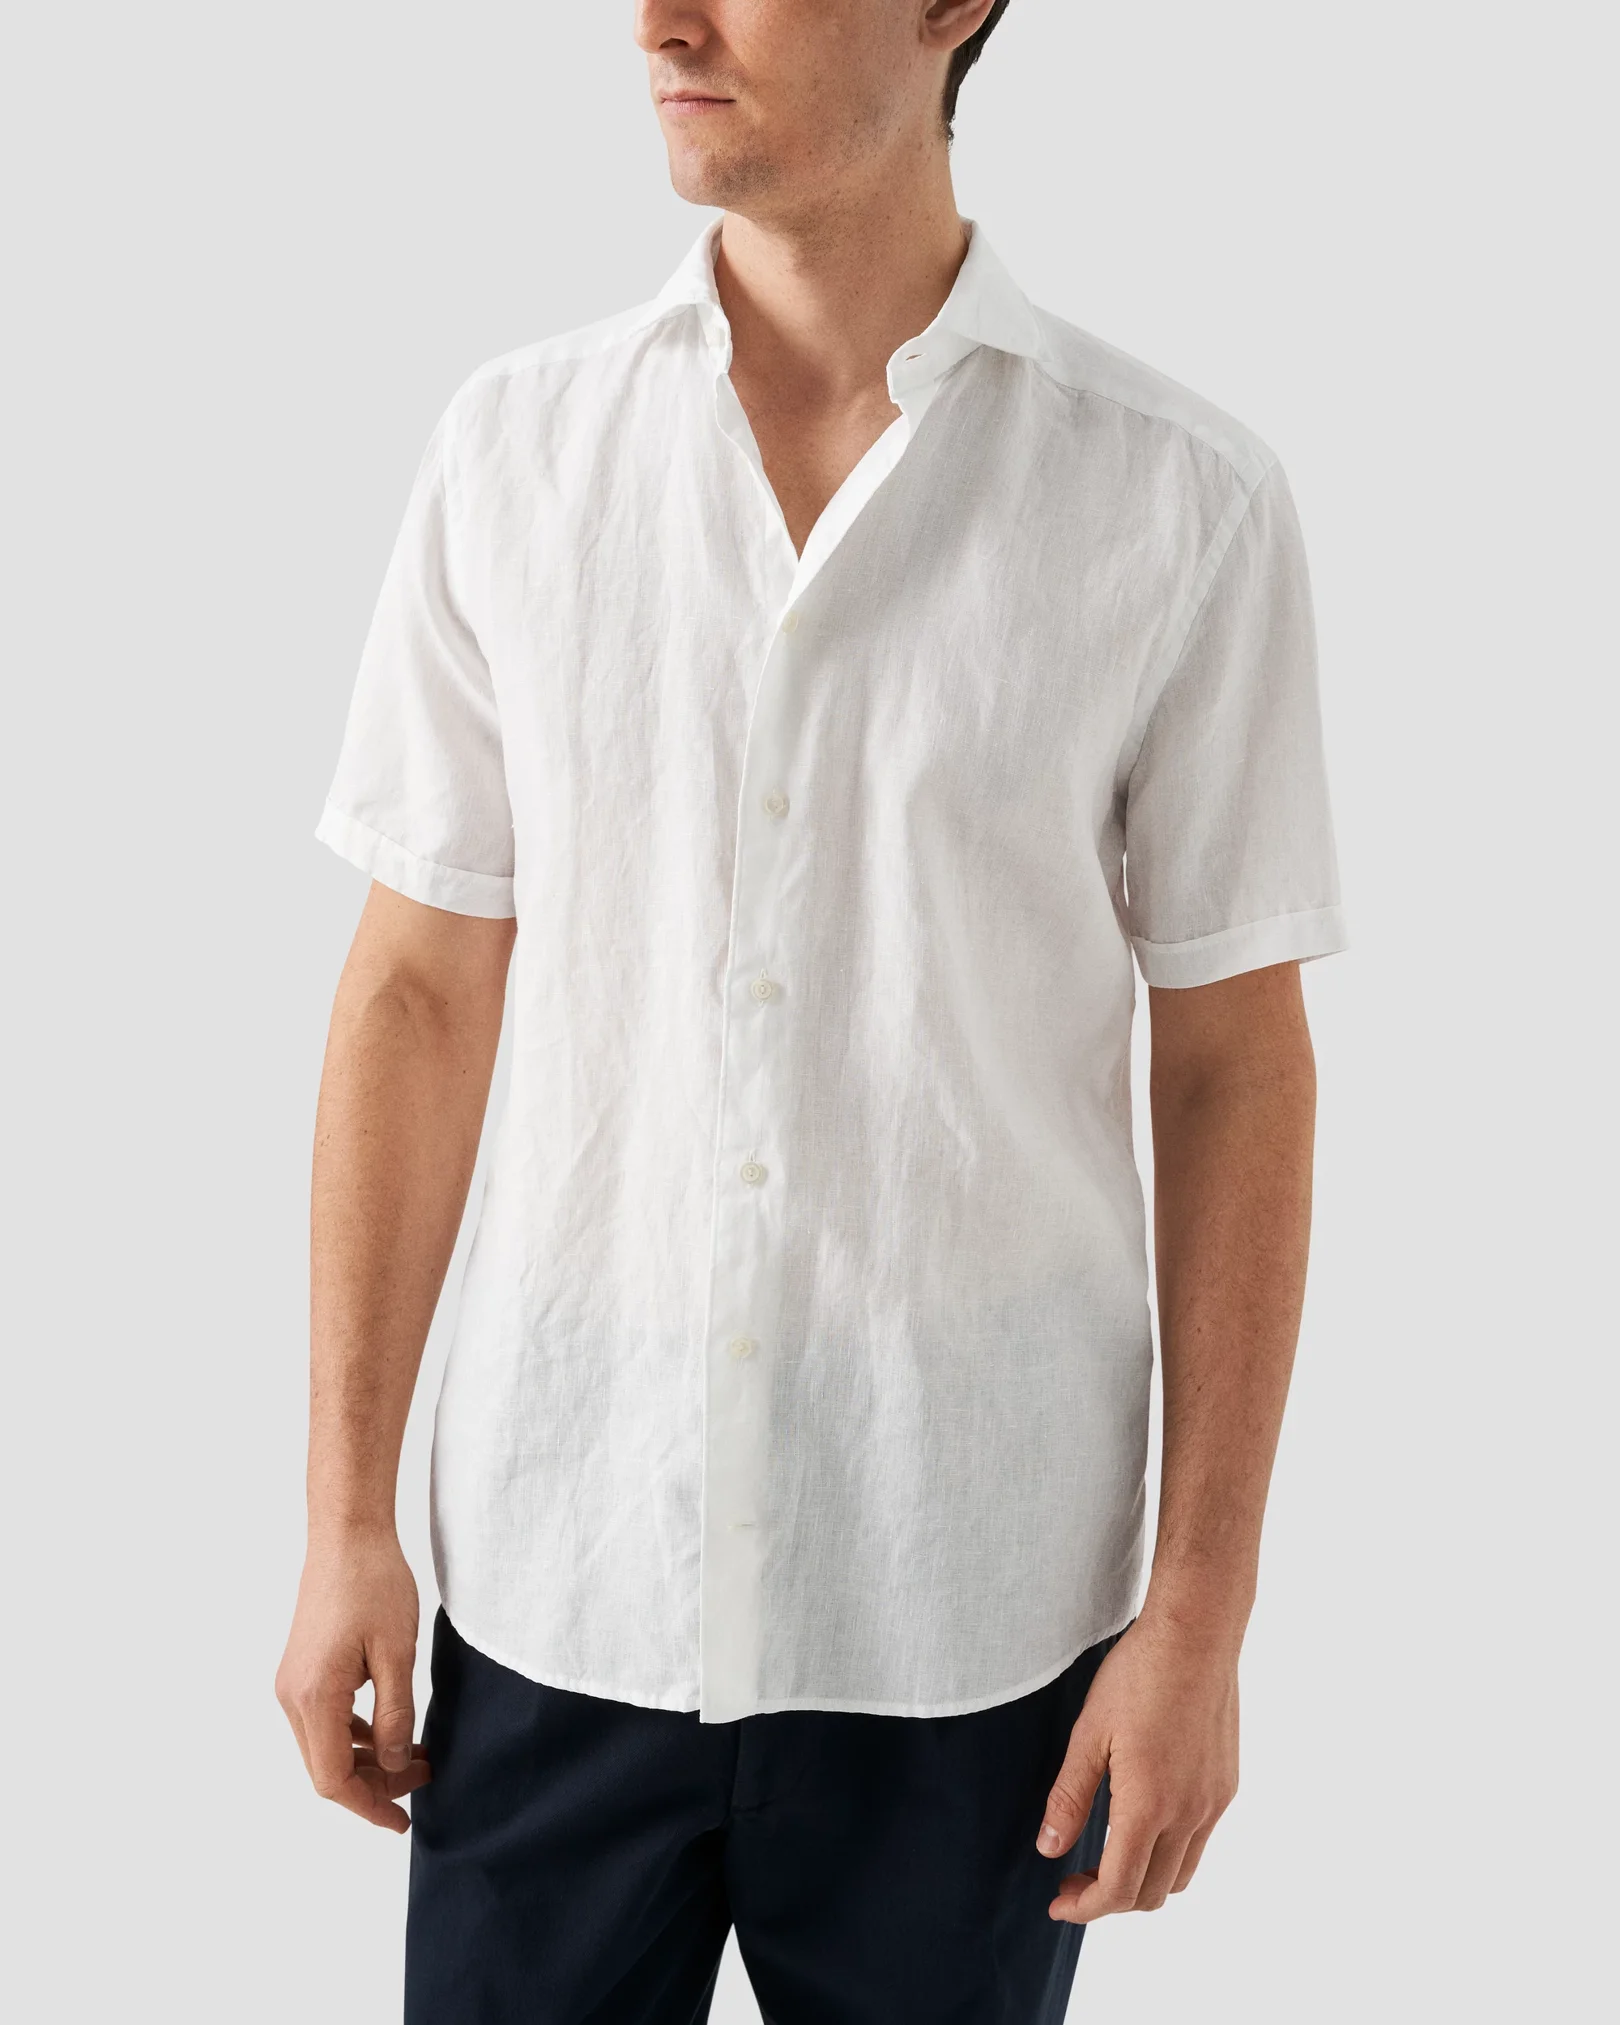 リミフゥ【LIMI feu】short sleeve linen shirt【リミフゥ】